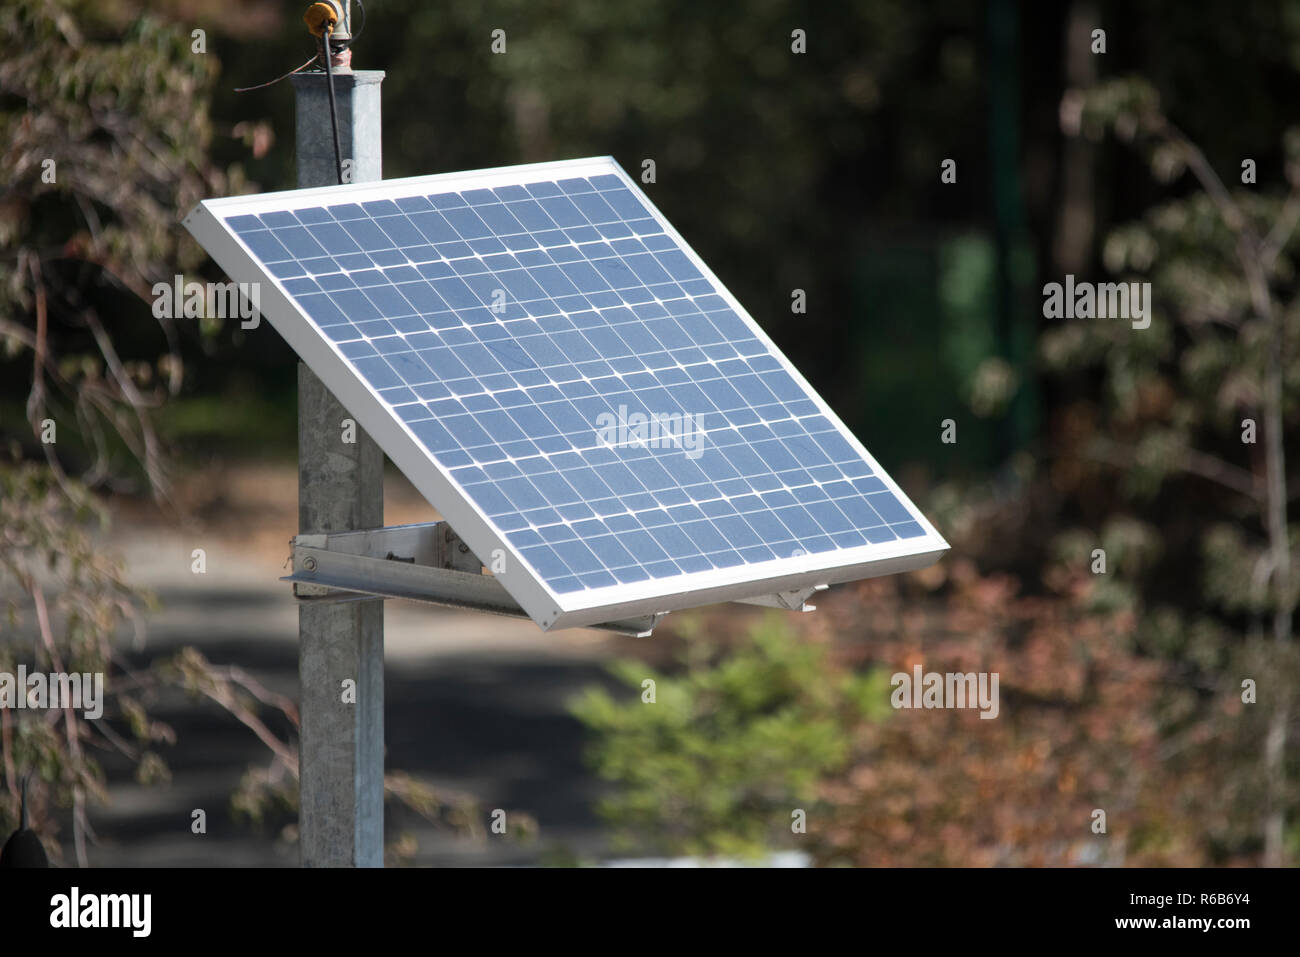 Piccoli impianti a energia solare sono la soluzione ideale per le postazioni remote dove il fabbisogno energetico è basso. Foto Stock